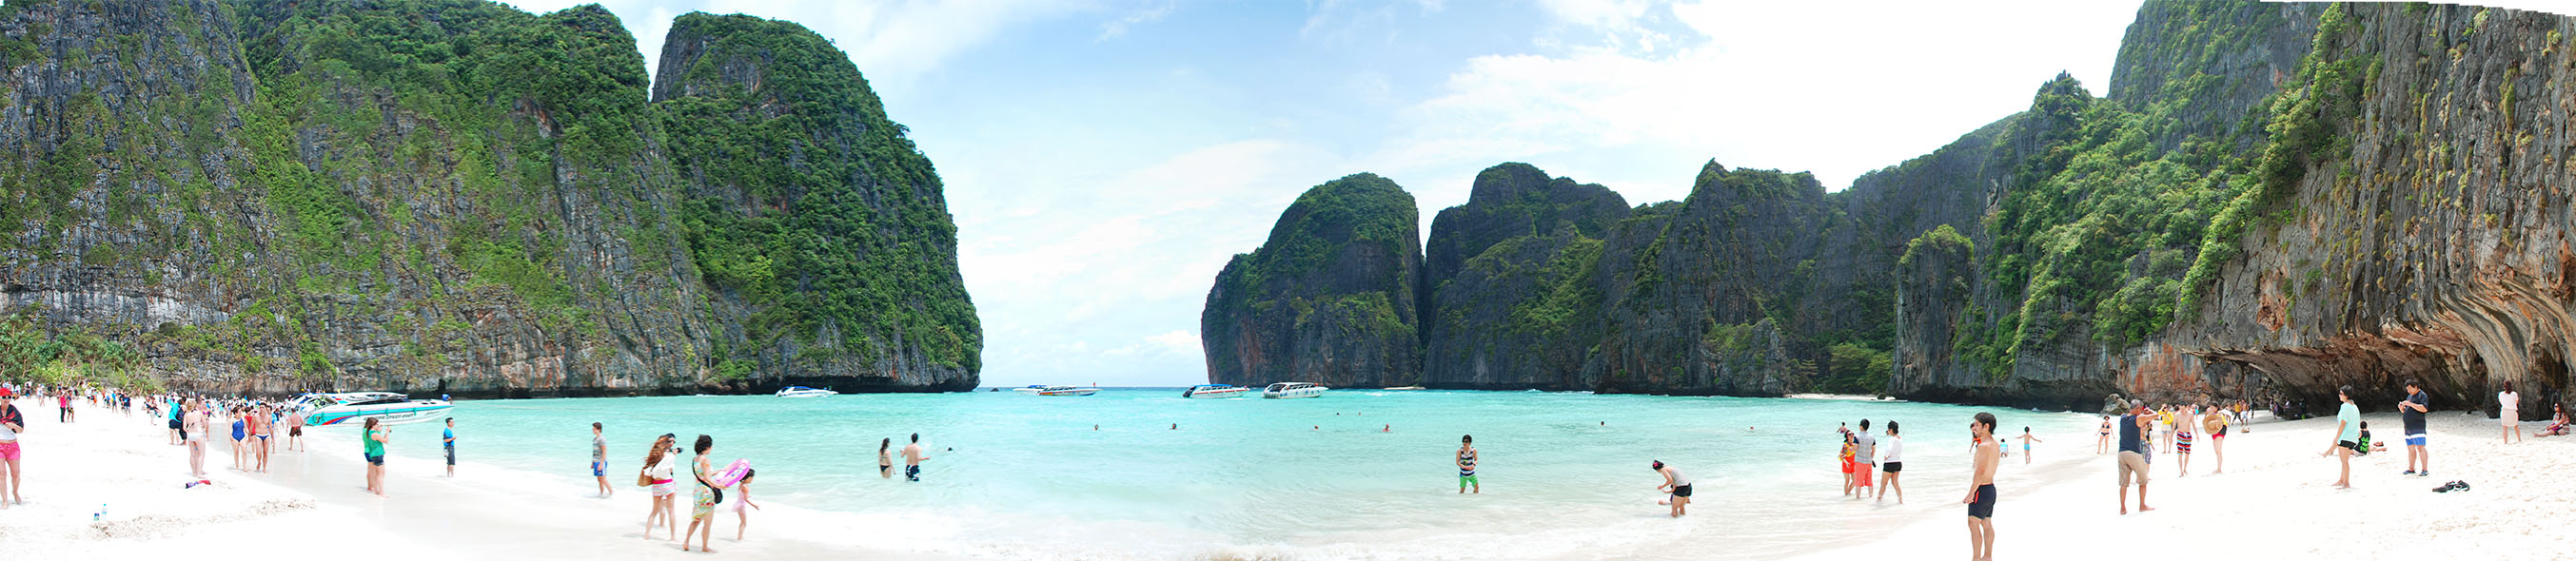 Quince días recorriendo un bello paraíso: Tailandia